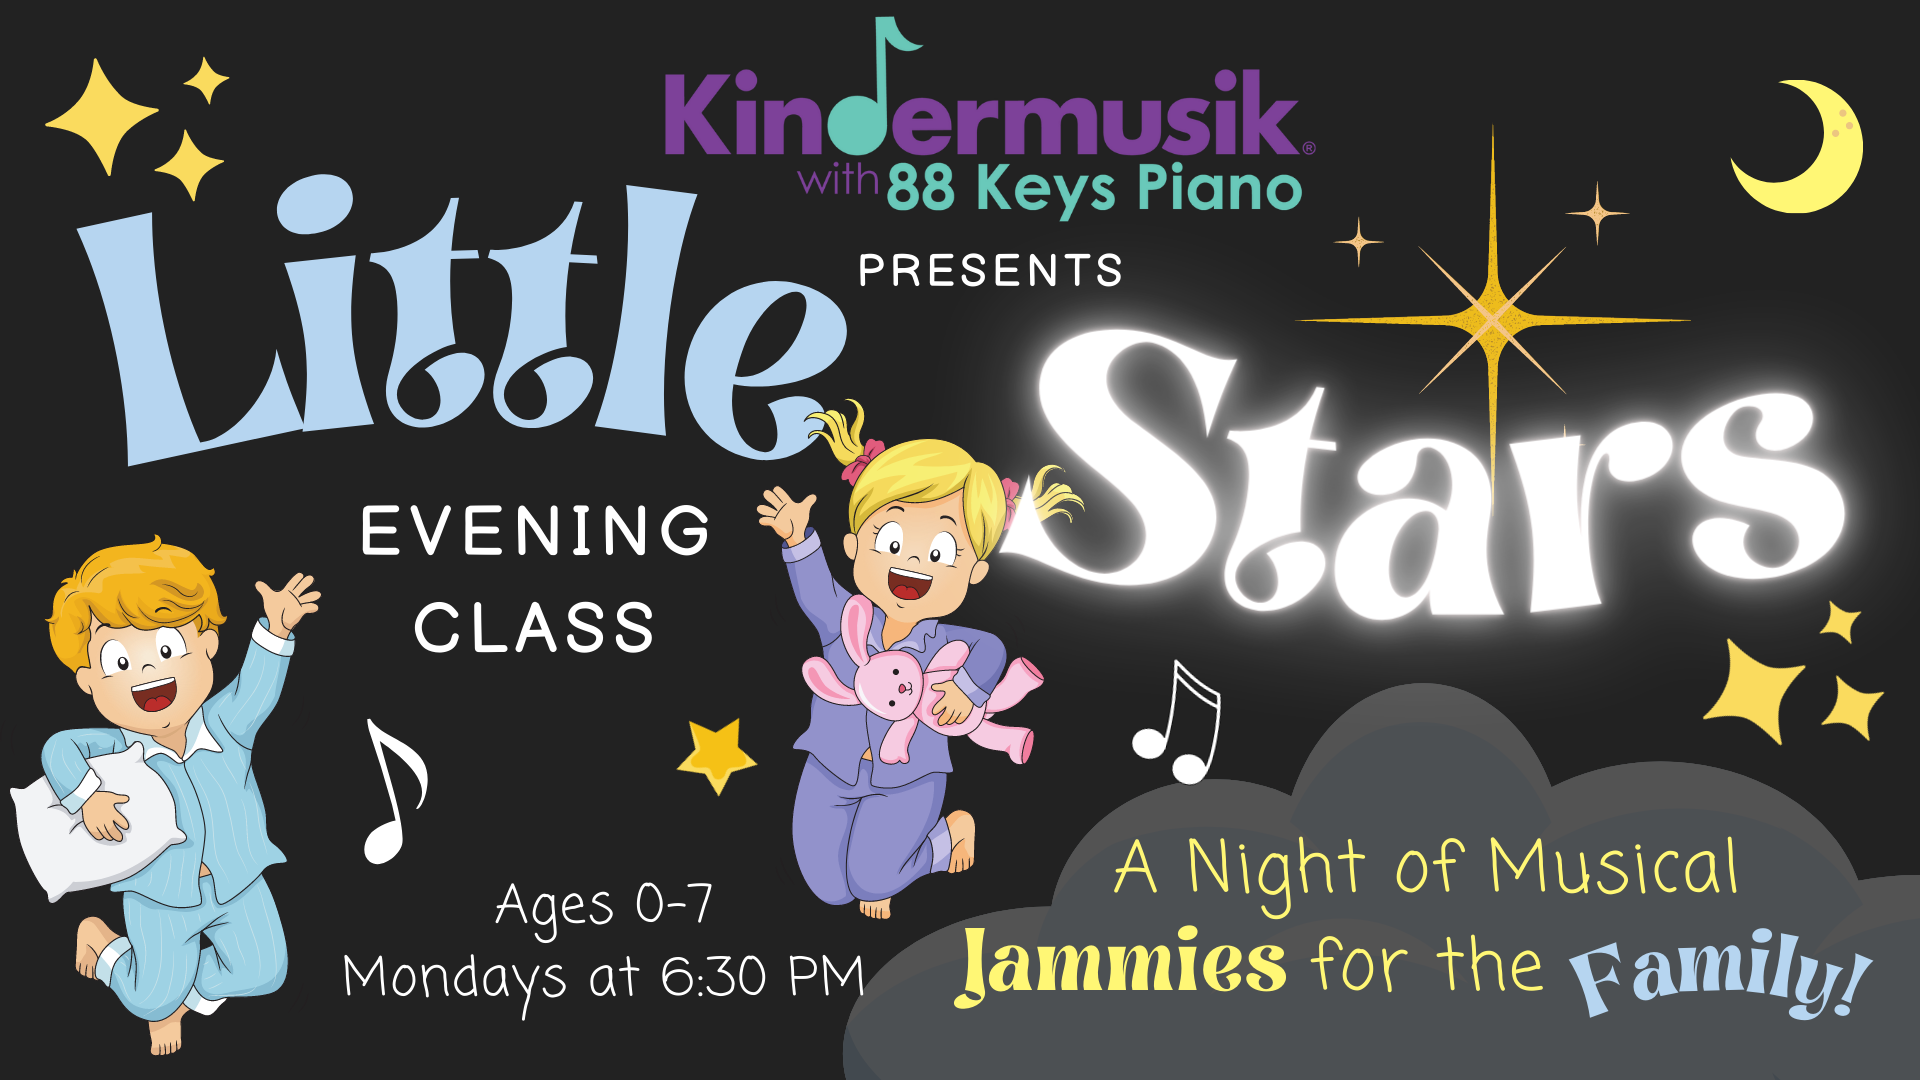 New evening class! “Little Stars” Mondays at 6:30 PM 🌟